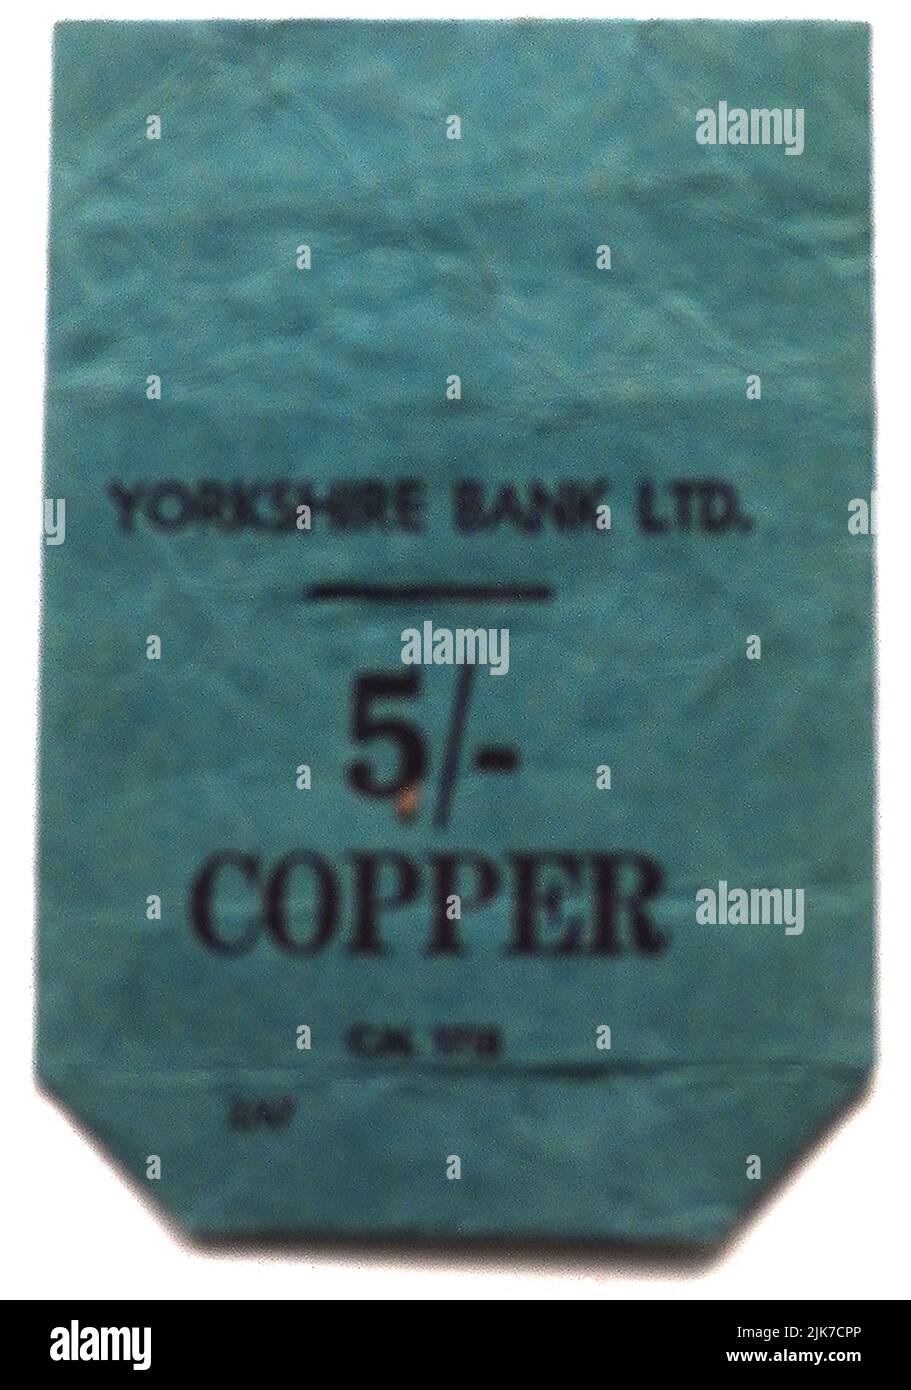 BOLSA DE DINERO - Una bolsa de papel vieja del banco británico de Yorkshire para sostener cinco chelines (coloquialmente, cinco bob) en monedas de cobre Foto de stock